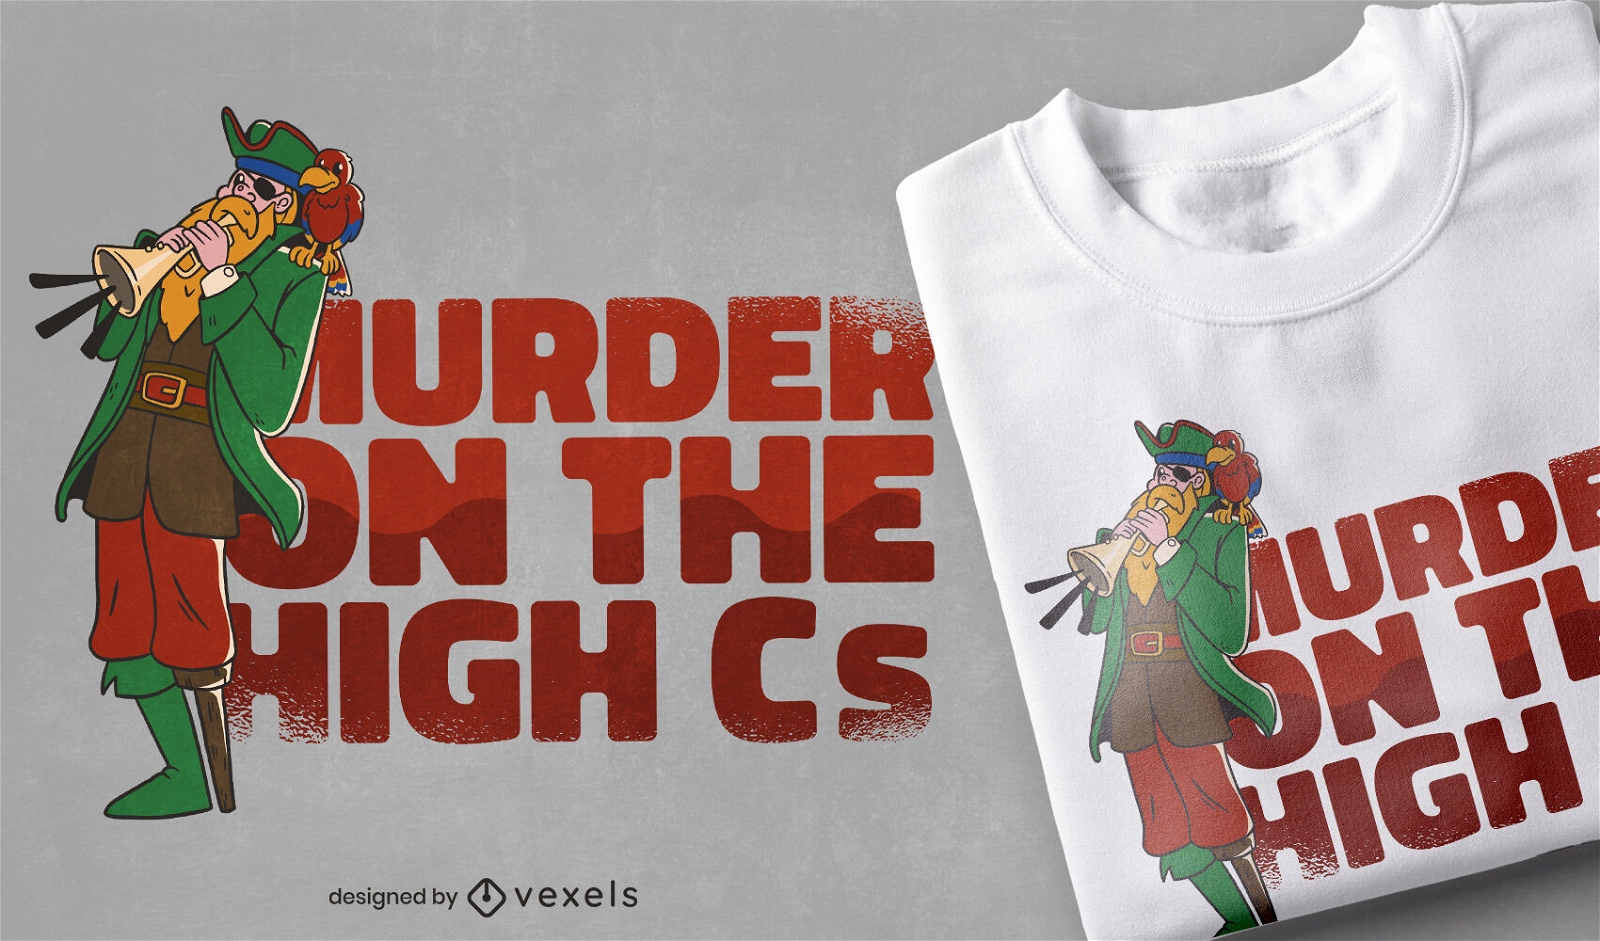 Asesinato en el dise?o de camiseta High Cs